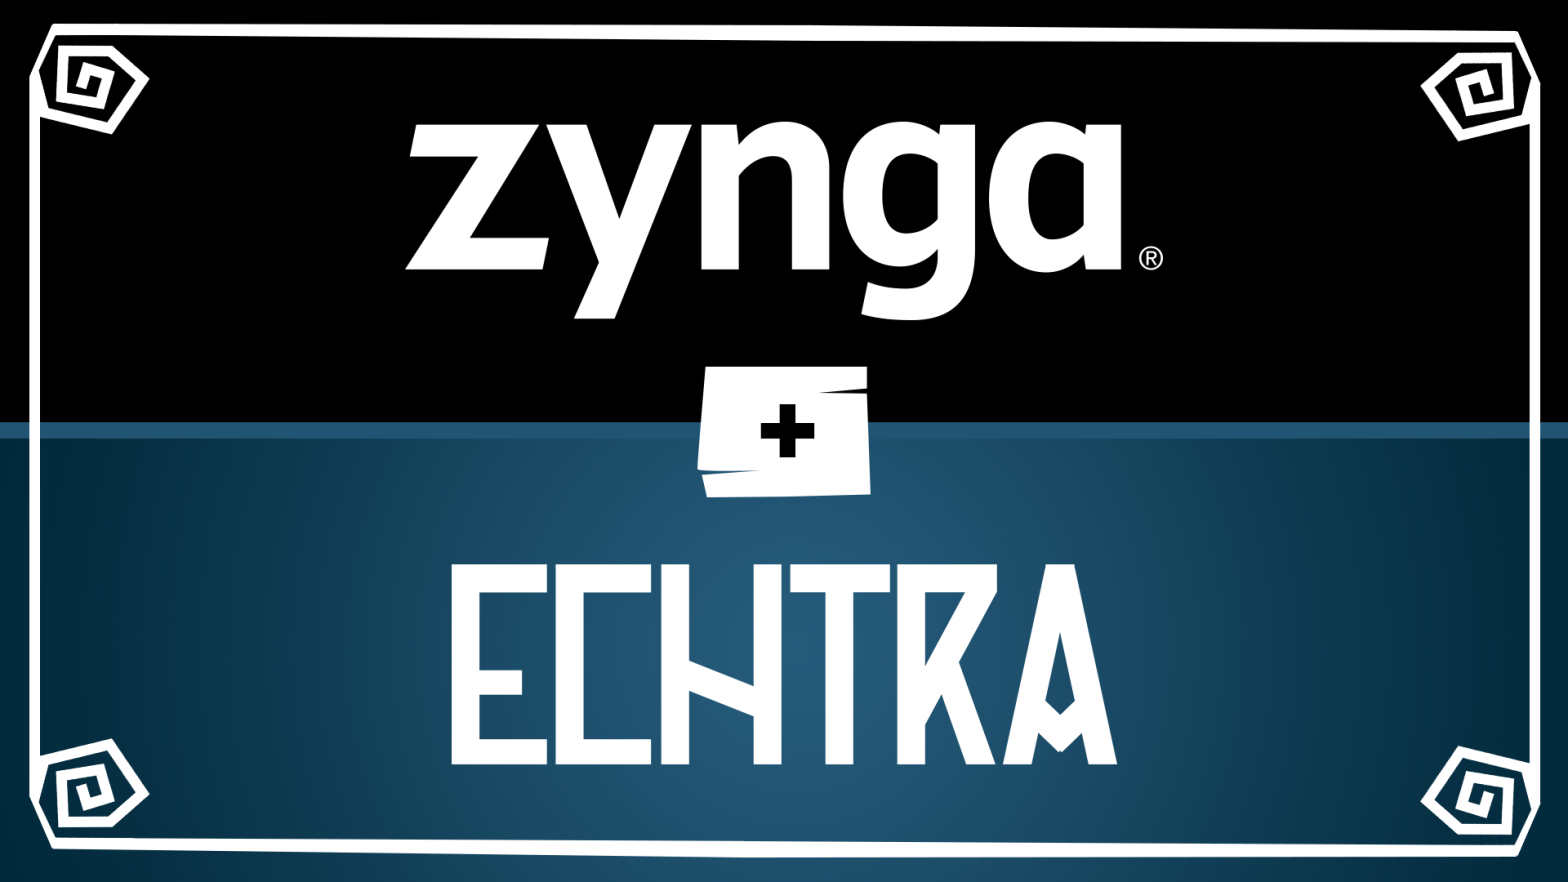 Image: Zynga